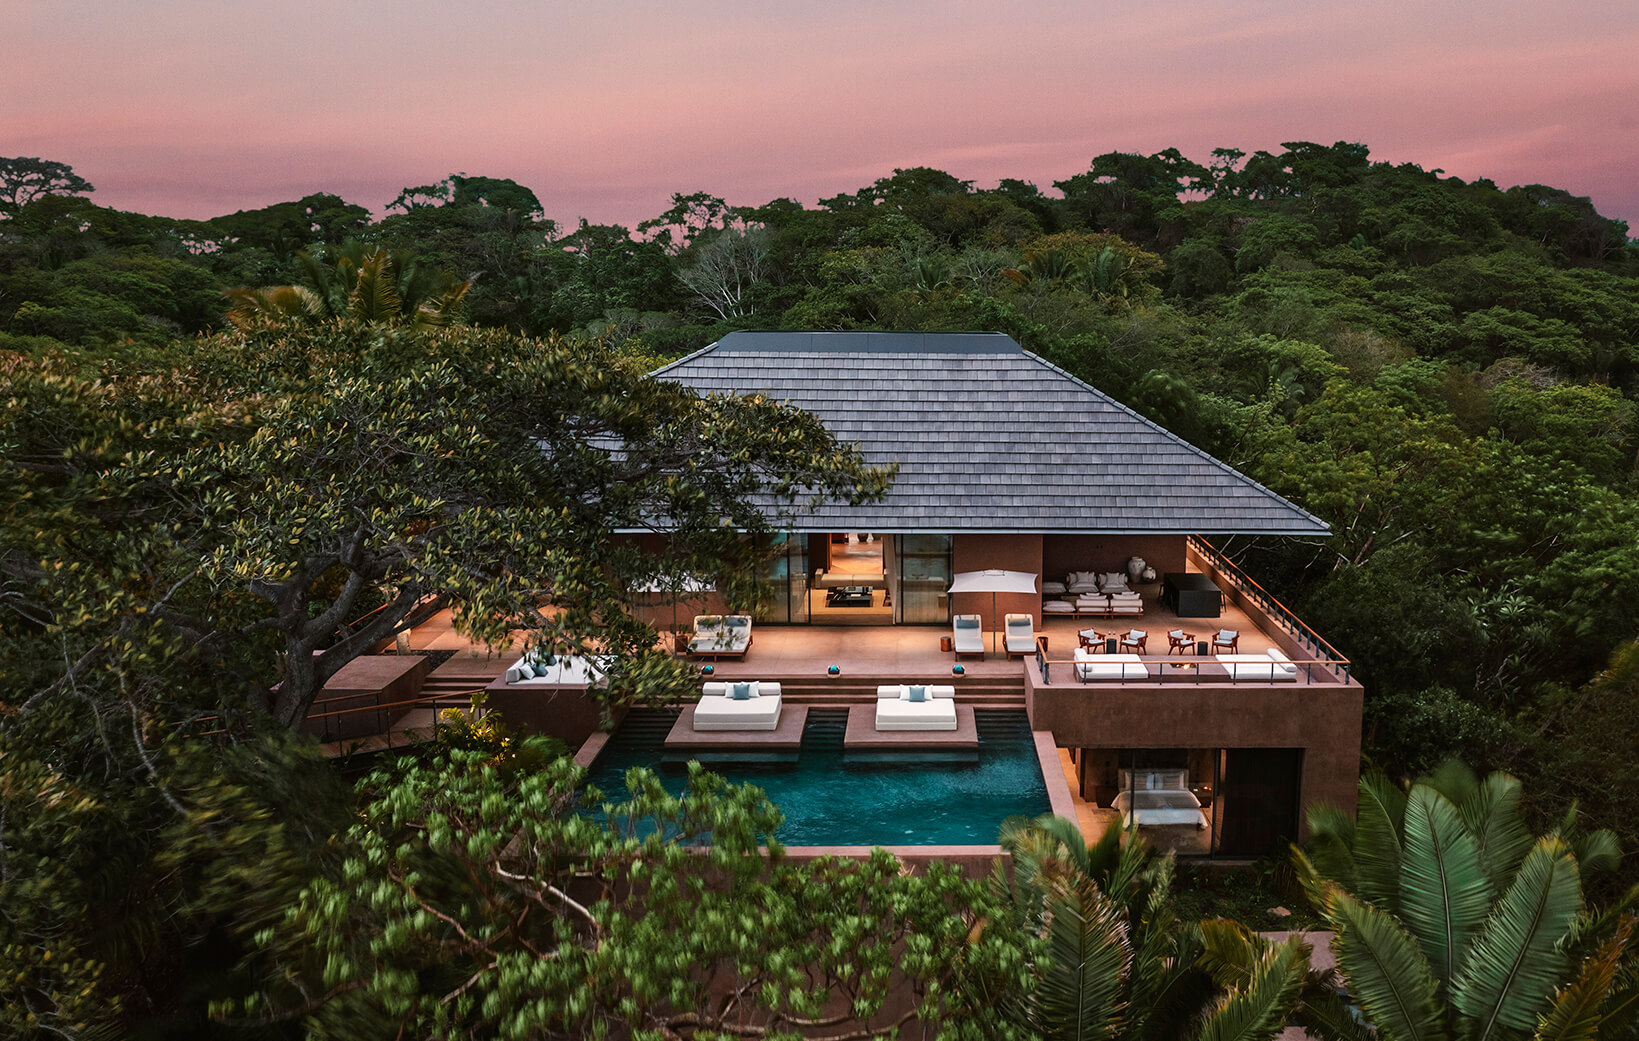 exterior of villa perched in jungle